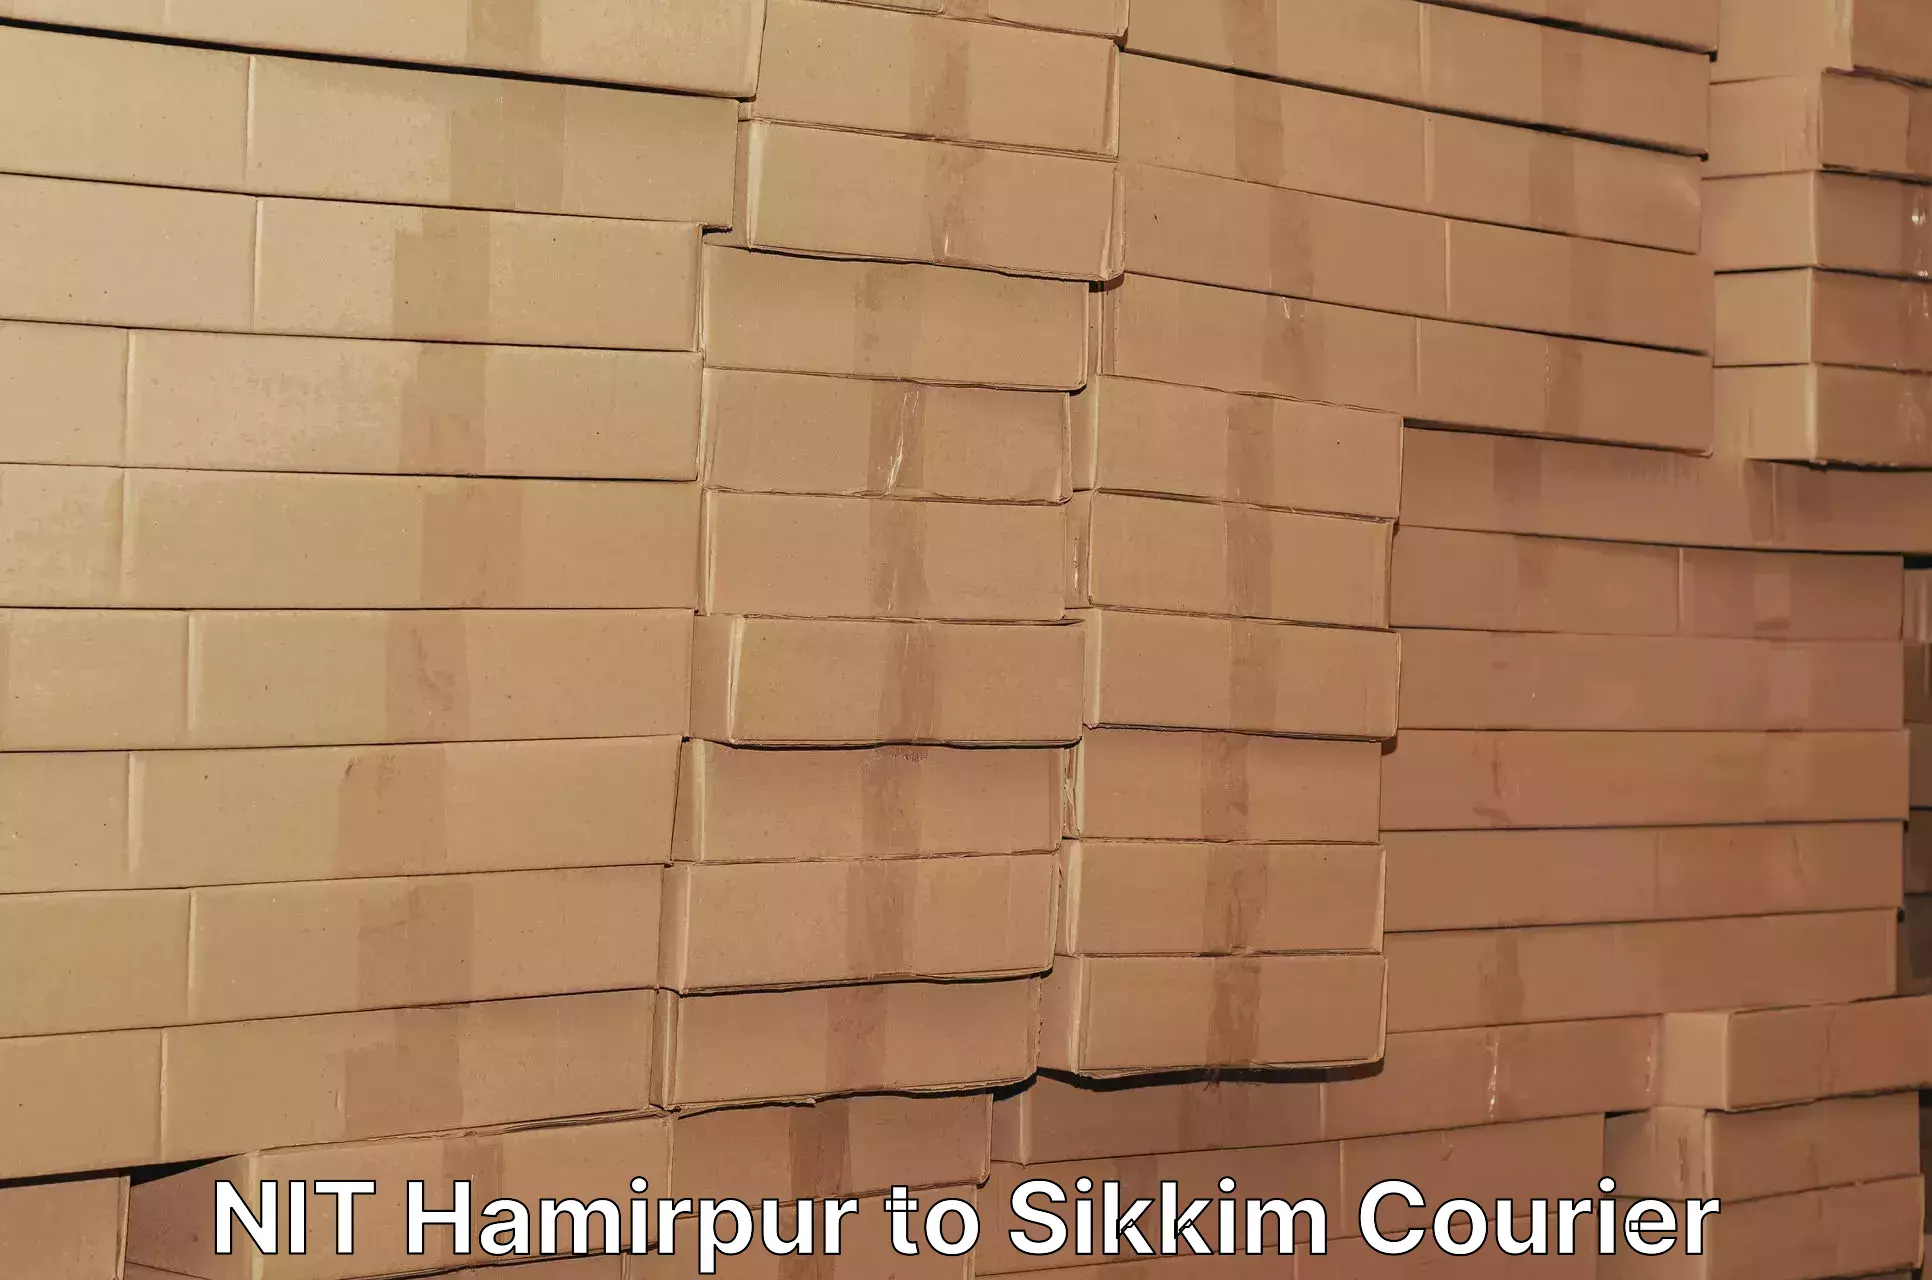 Efficient parcel service NIT Hamirpur to Sikkim